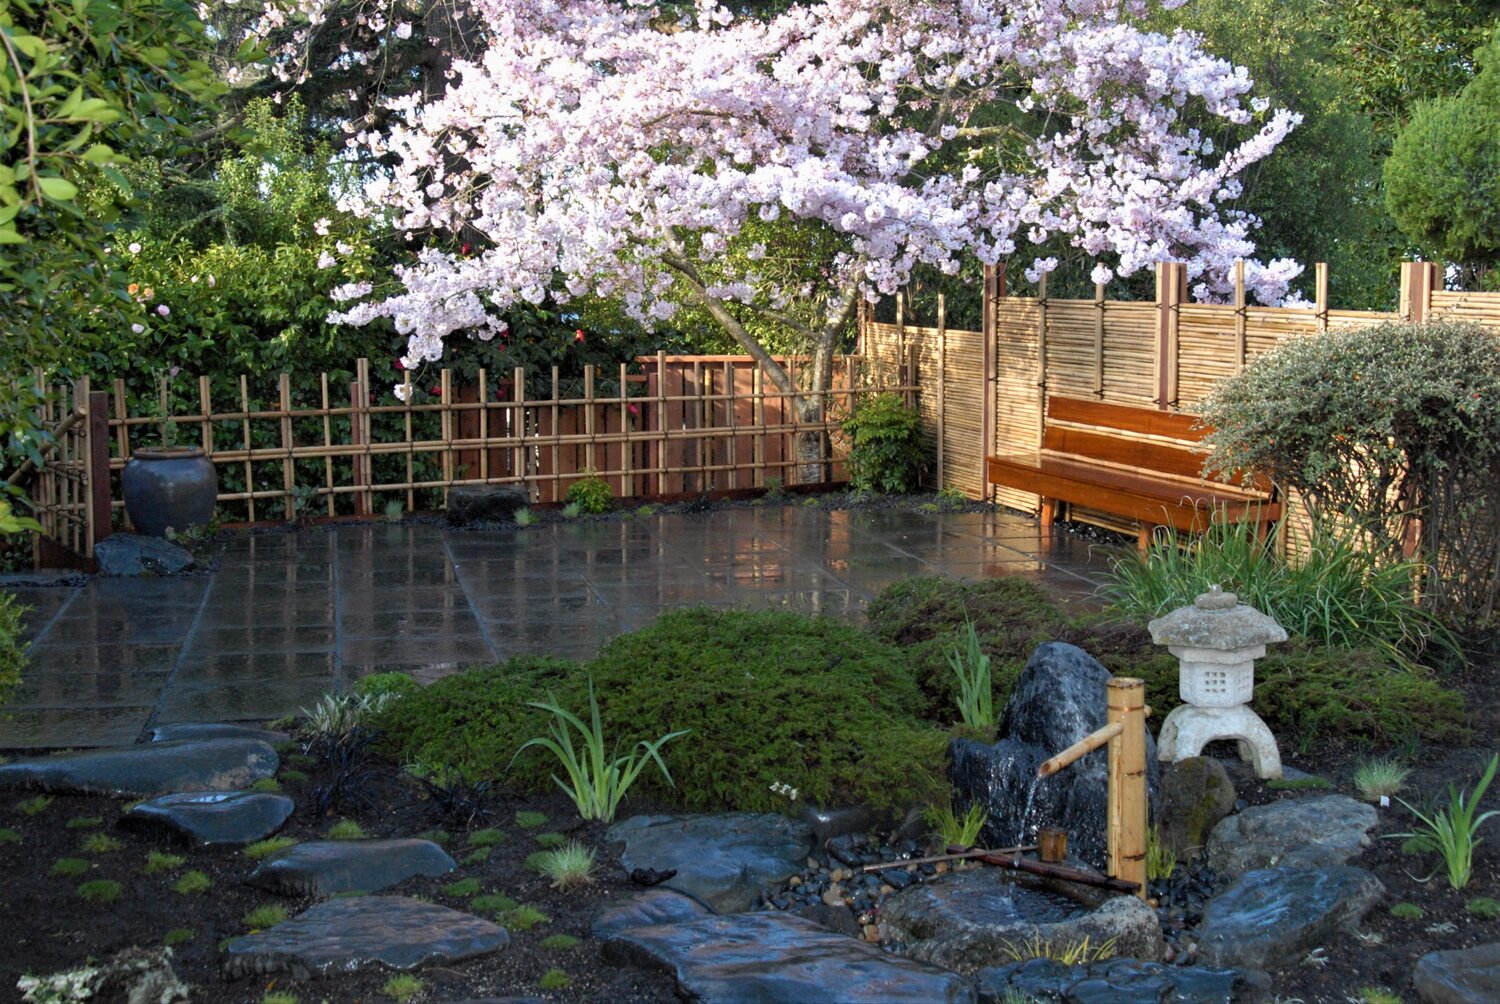 Japanese Garden Design In Sf Bay Area Berkeley Ca Br Japanese Style Fence Fountain Water Feature Tea House Patio Zen Garden Design Zen Master Gardens